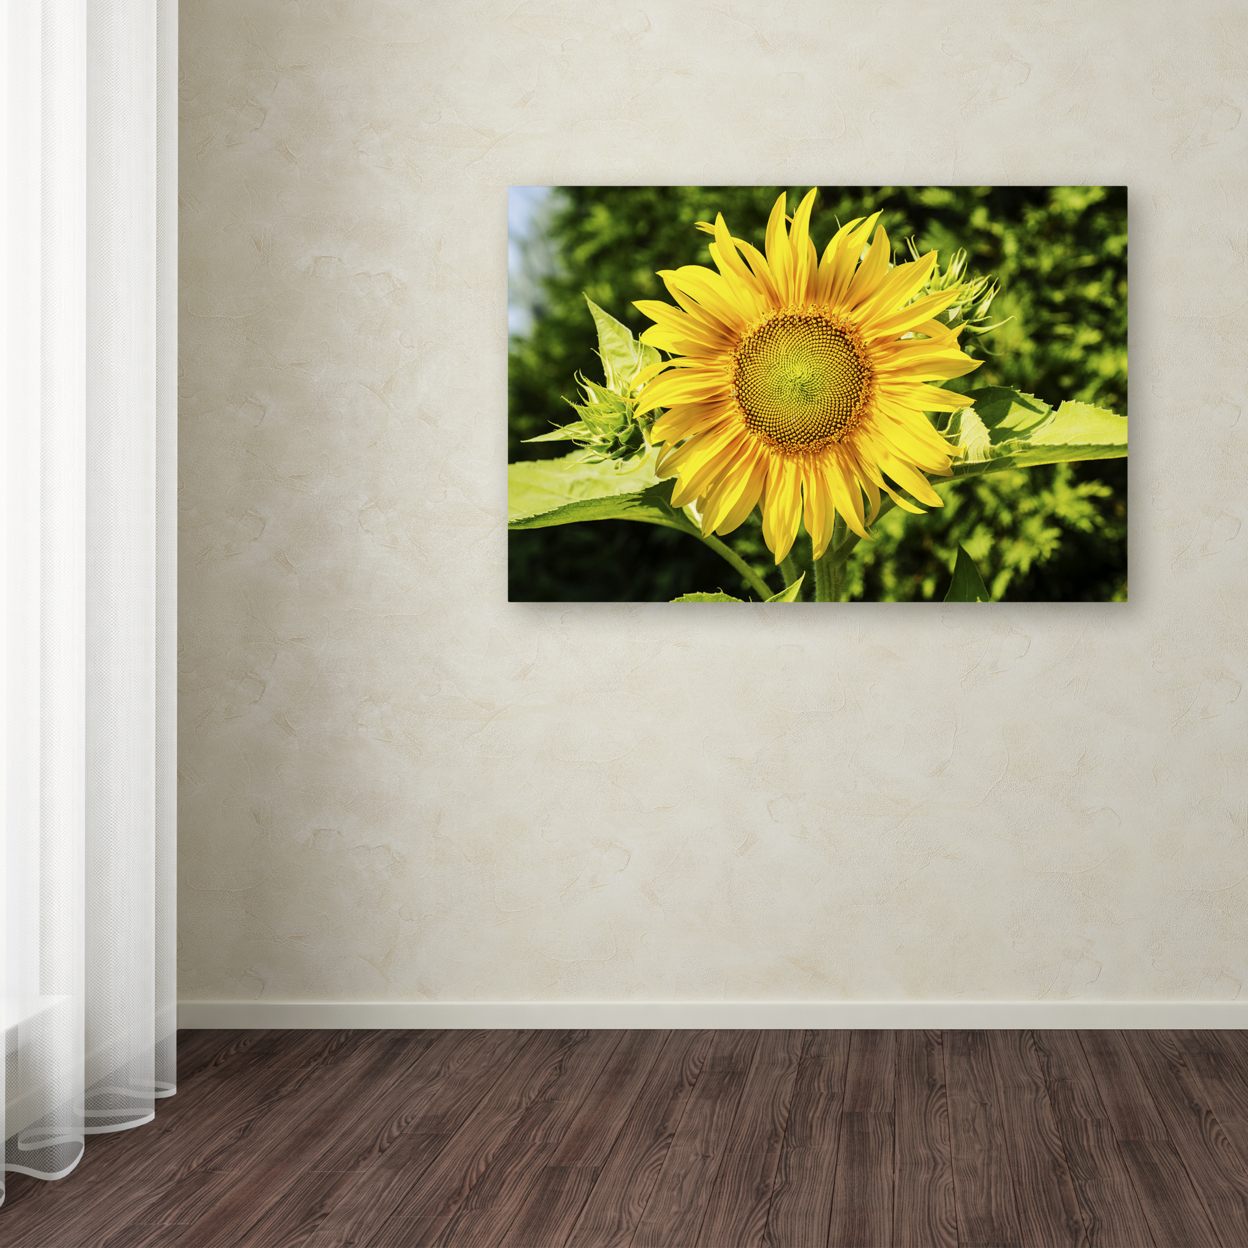 Kurt Shaffer 'Just A Sunflower' Canvas Art 16 X 24